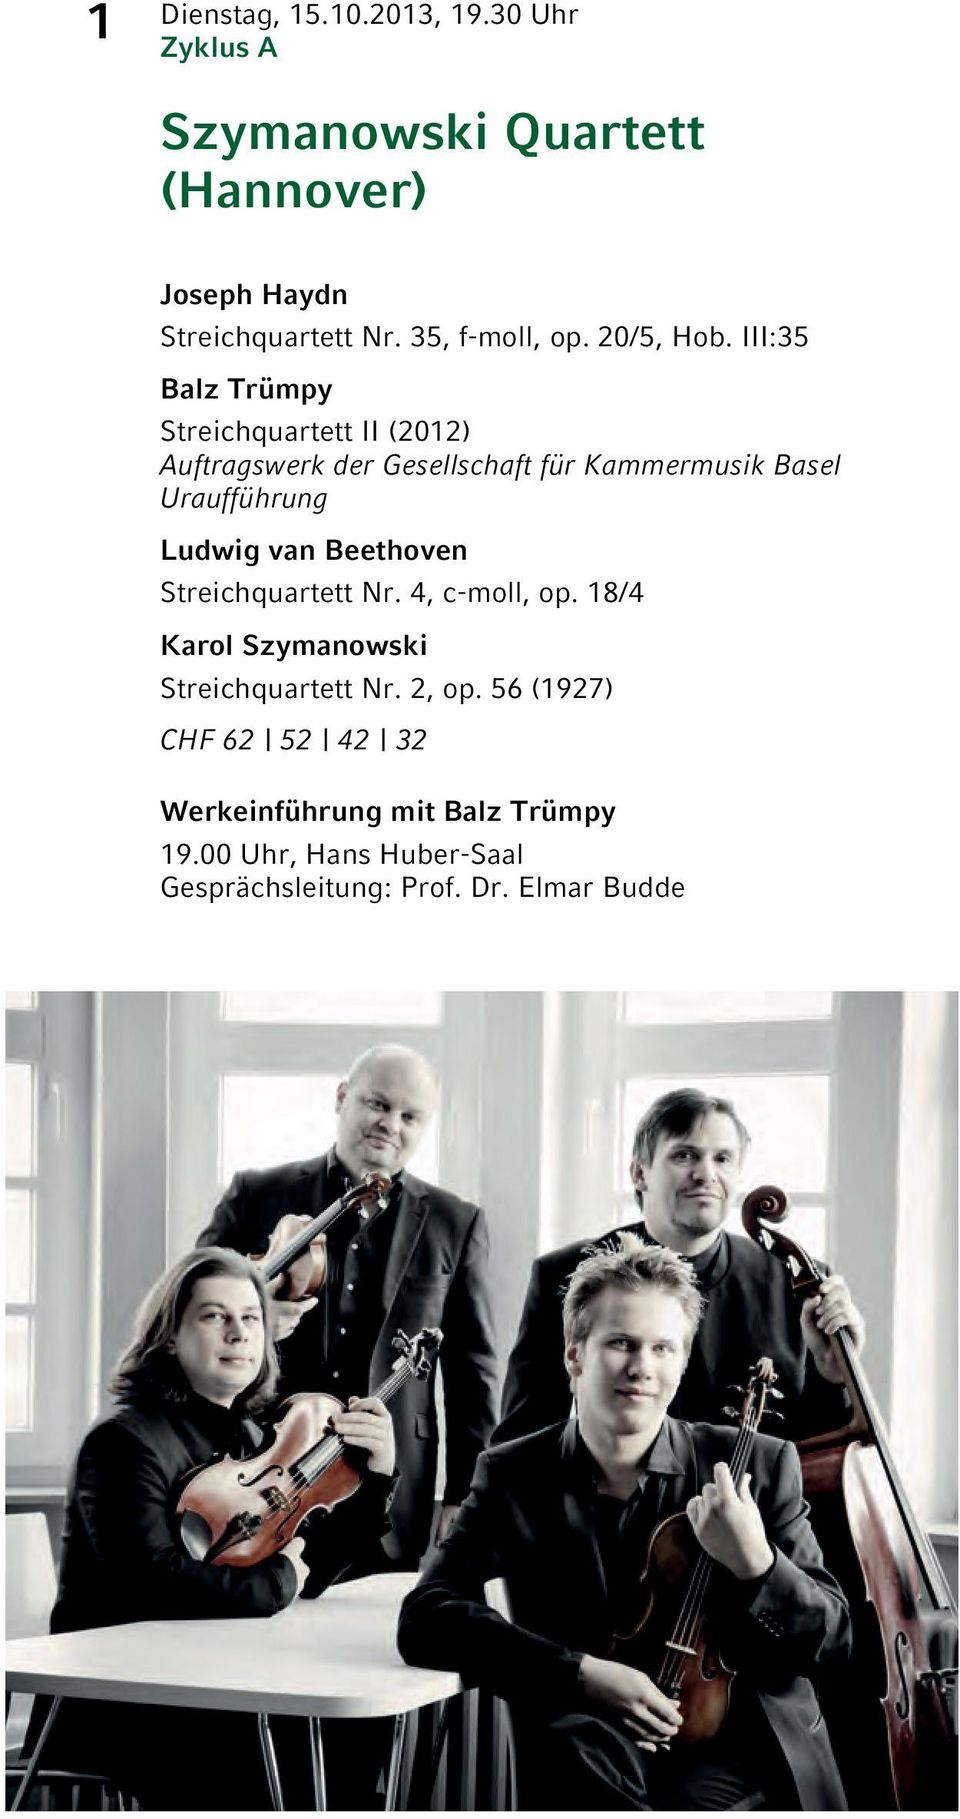 III:35 Balz Trümpy Streichquartett II (2012) Auftragswerk der Gesellschaft für Kammermusik Basel Uraufführung